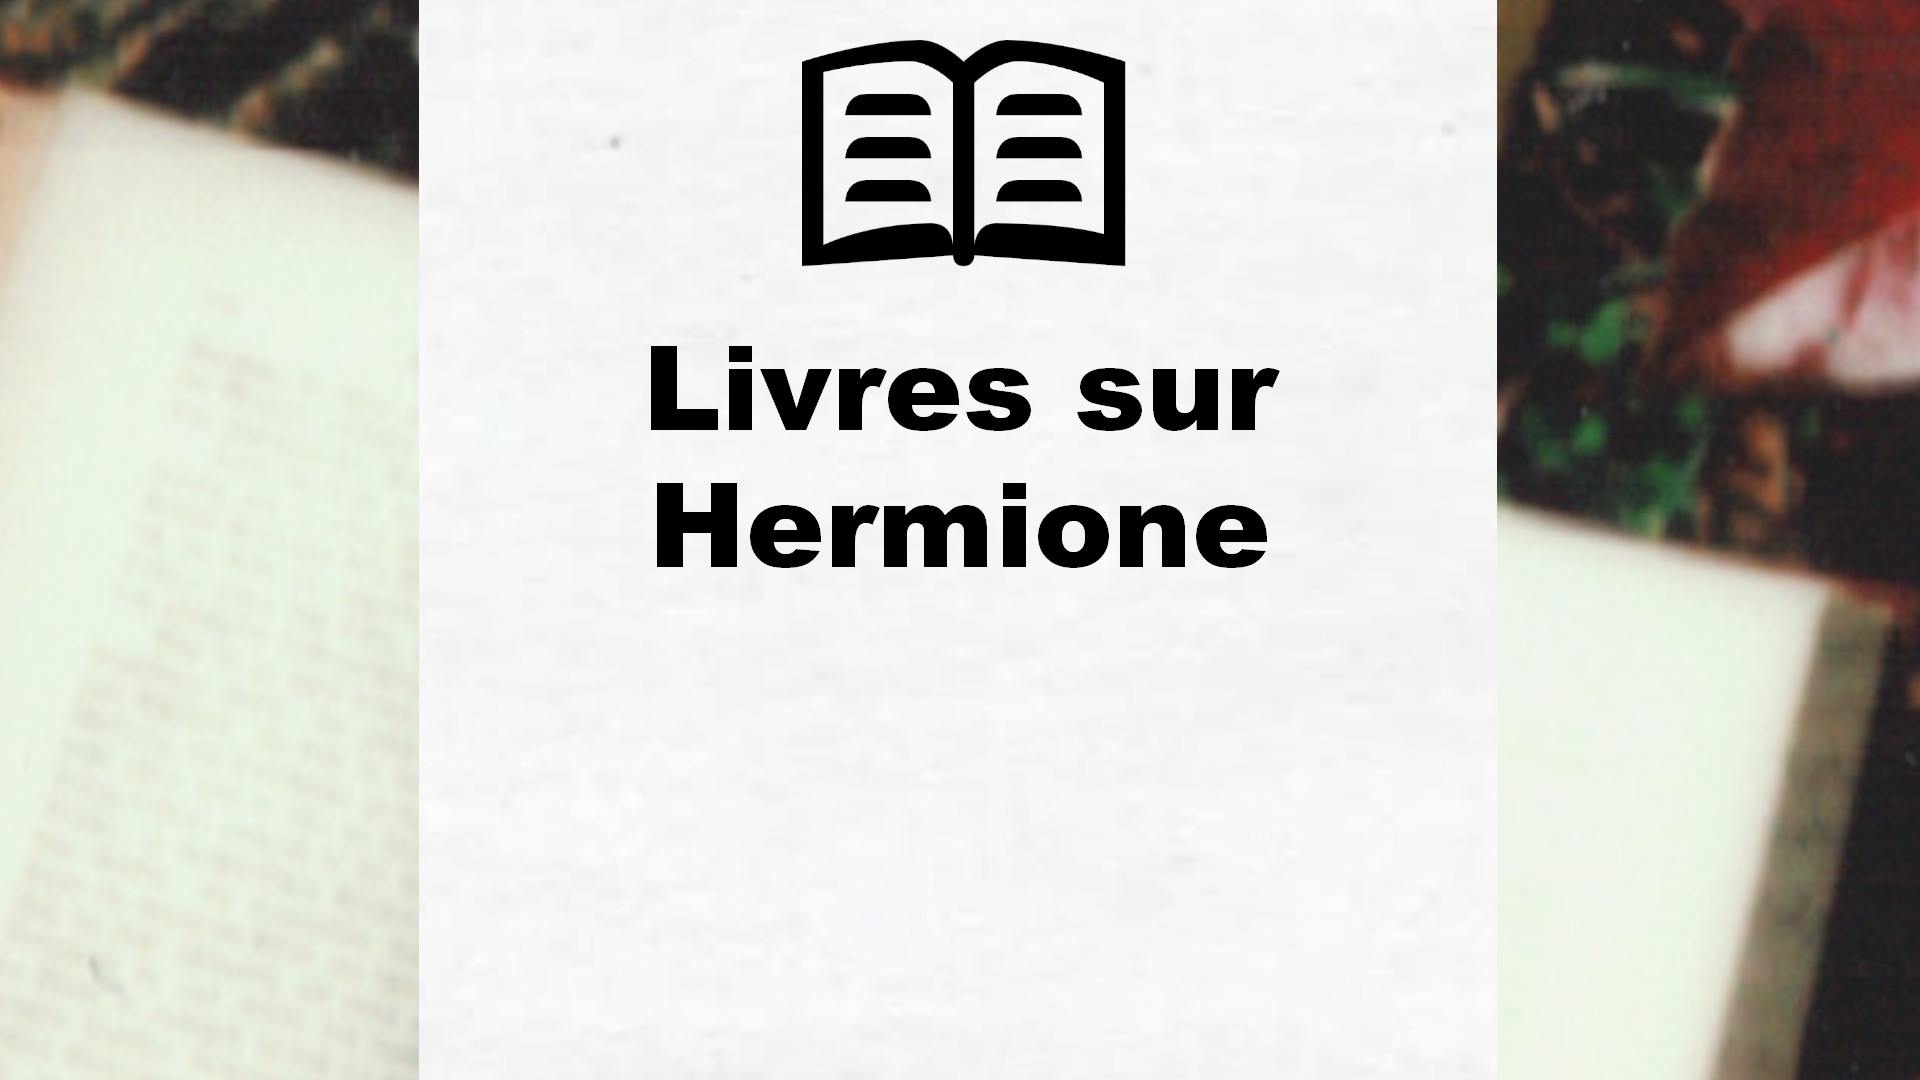 Livres sur Hermione